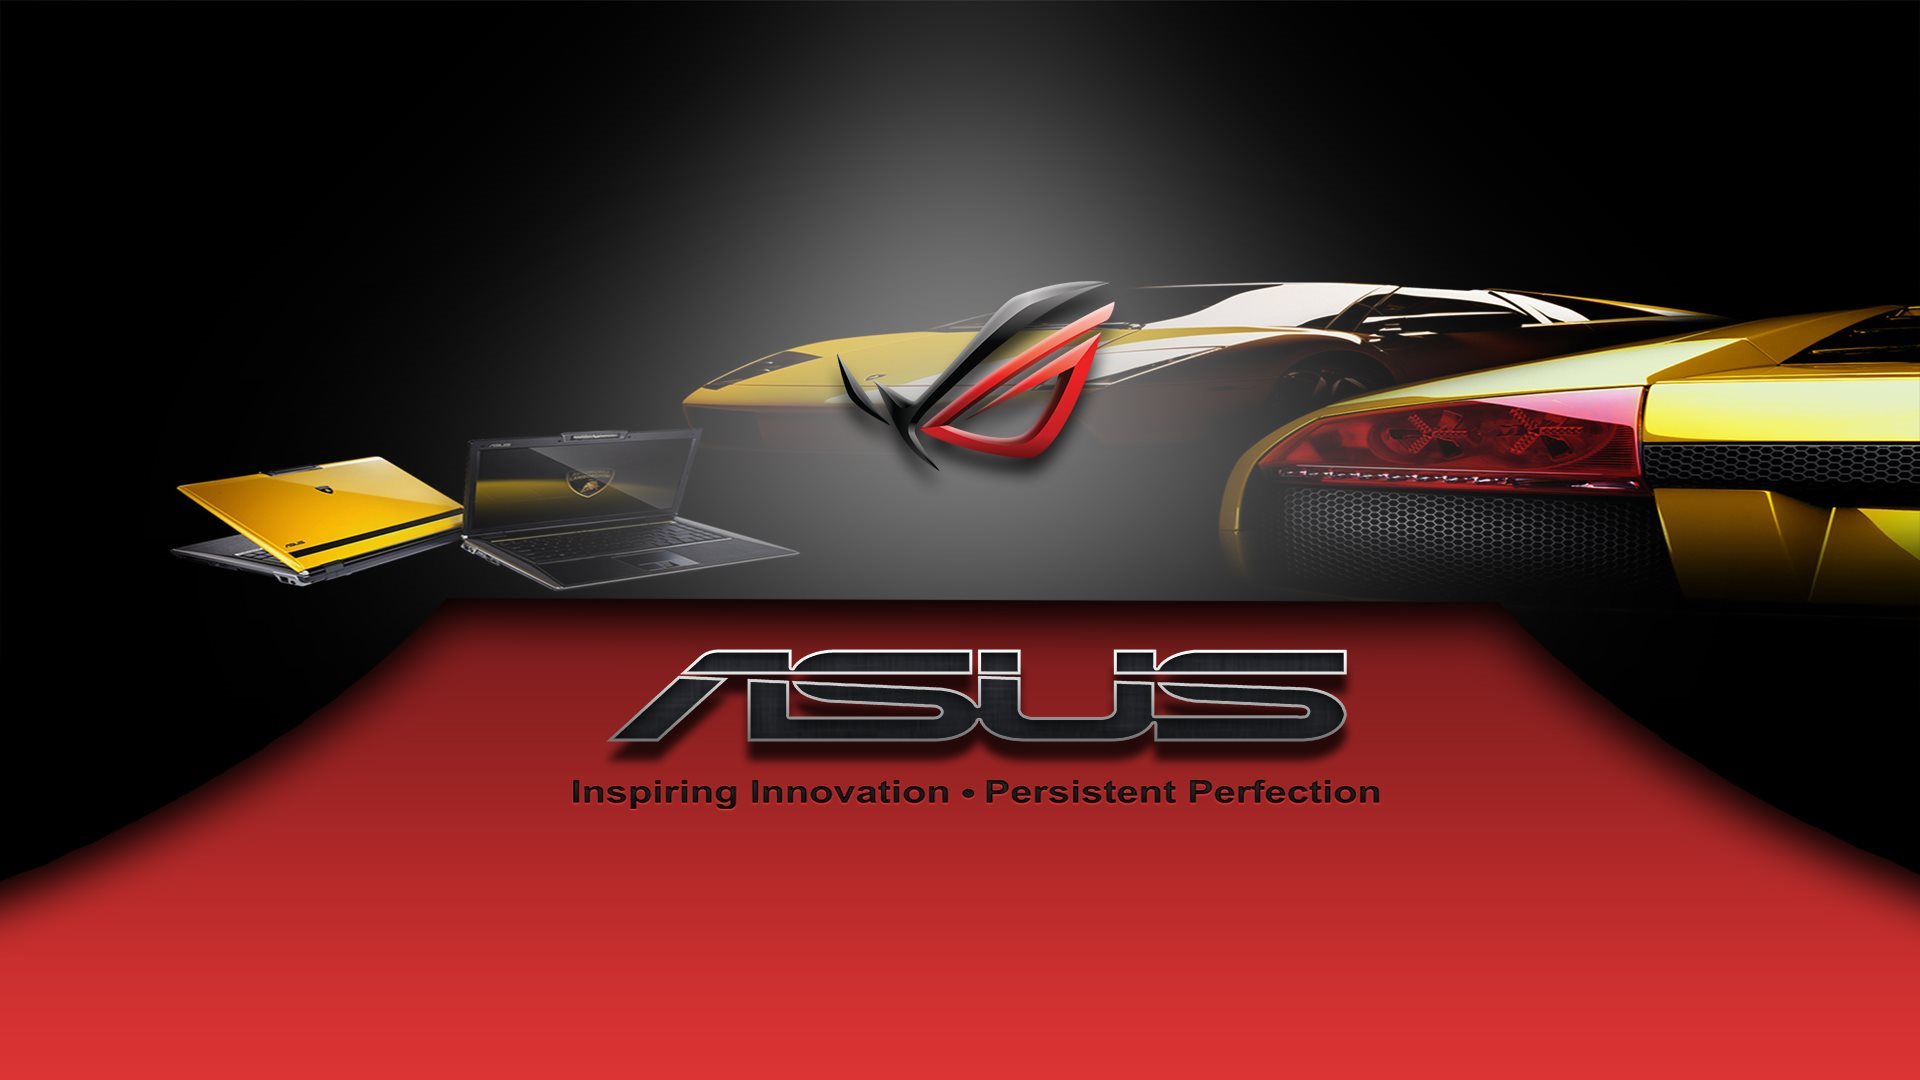 ダウンロード画像 赤didis 技術 Asus 黒 刺激的な革新 ノート 画面の解像度 19x1080 壁紙デスクトップ上